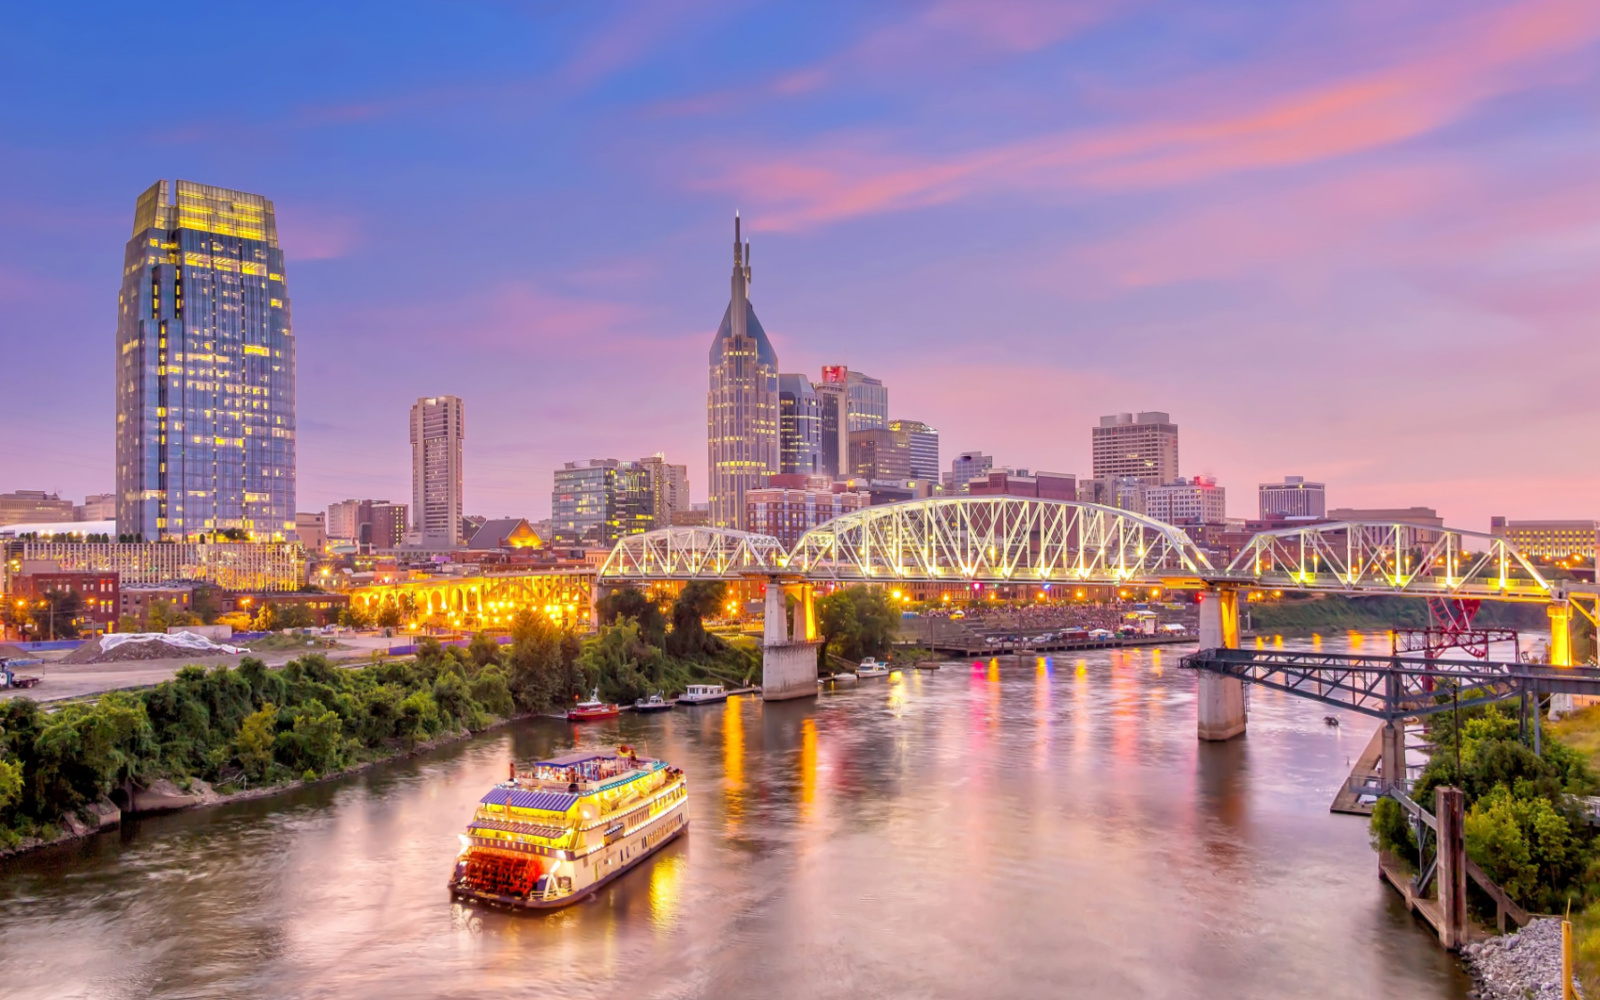 Is Nashville Safe? | Travel Tips & Safety Concerns